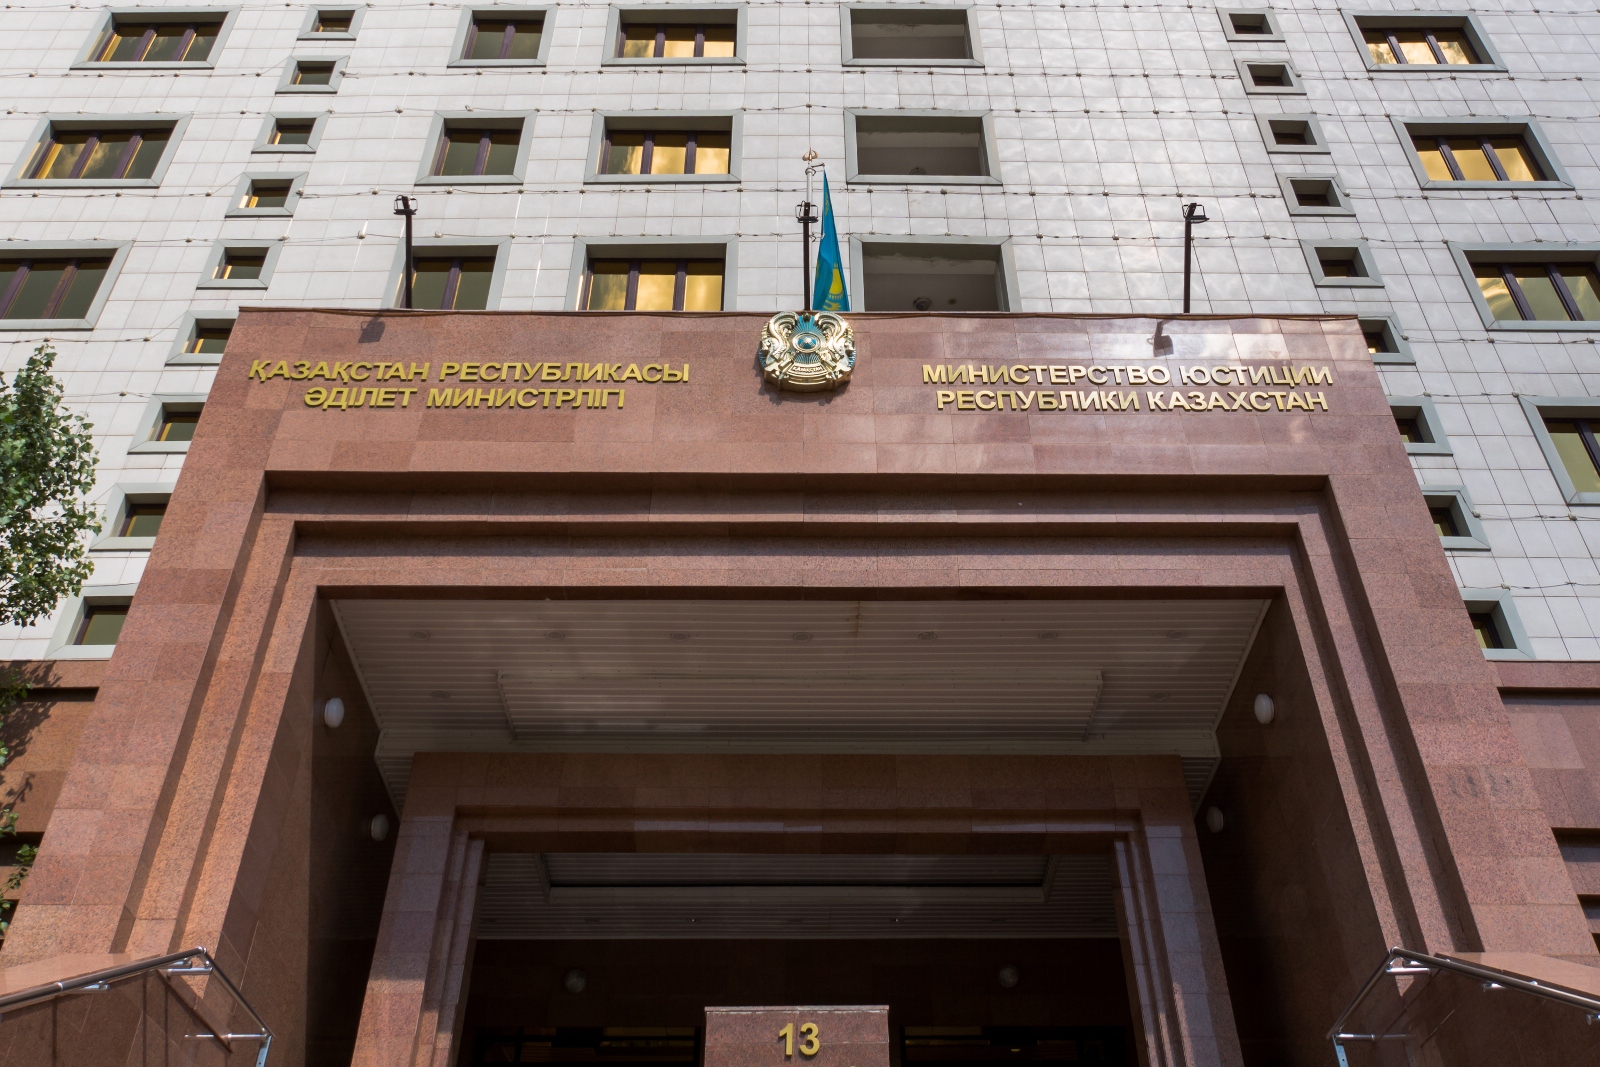 СПИСОК кандидата рекомендованного к назначению в соответствии с протоколом конкурсной комиссии Министерства юстиции Республики Казахстан